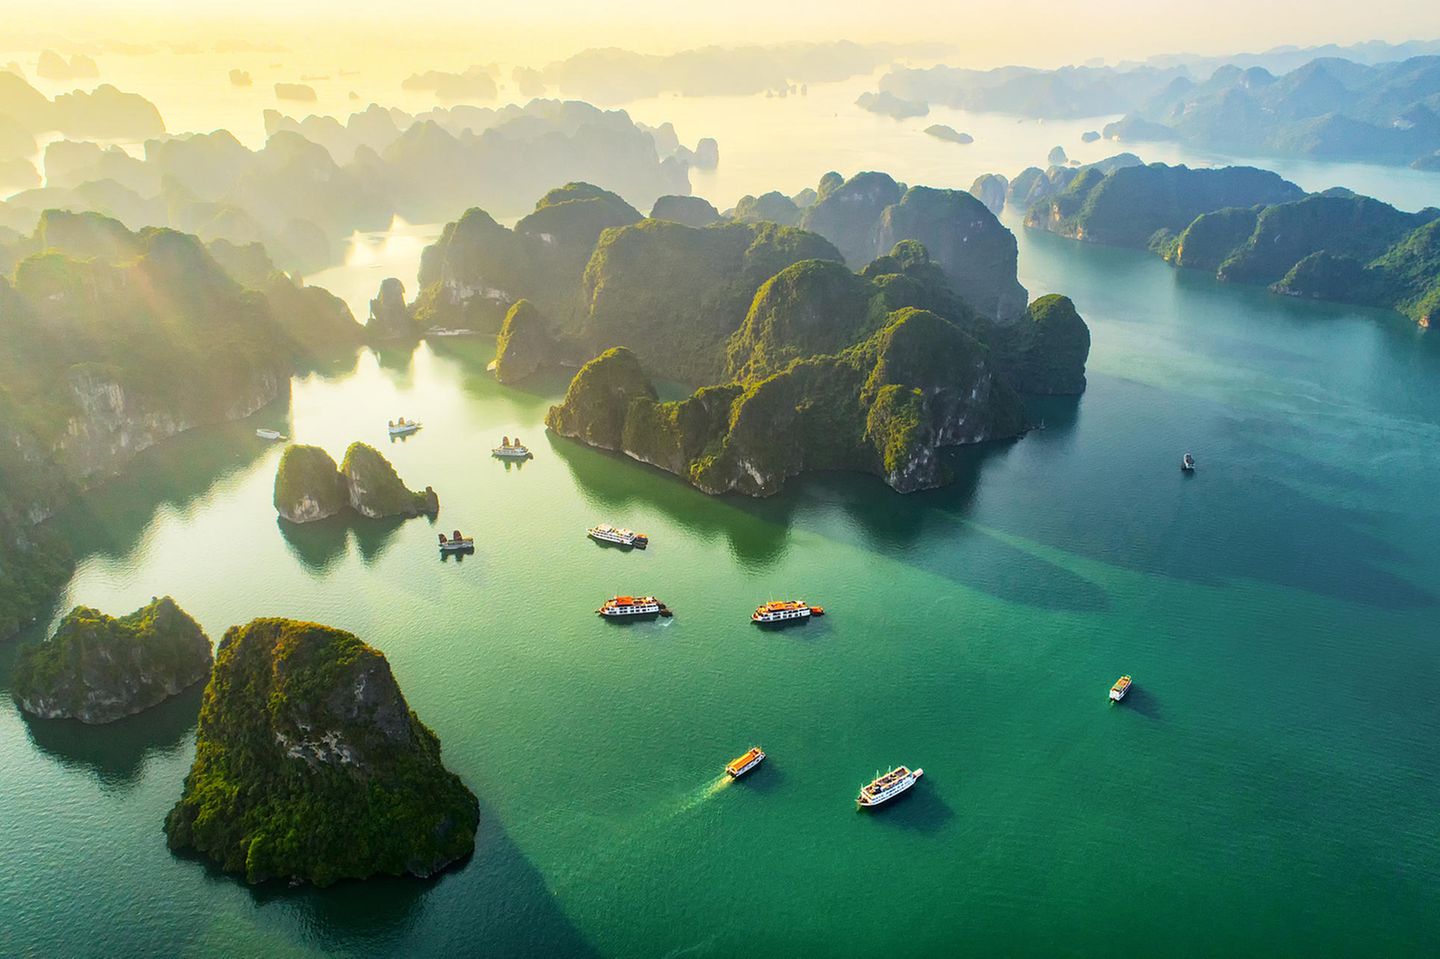 Mit ihren fast 2000 Inseln zählt die Halong-Bucht im Norden Vietnams zum Unesco-Weltnaturerbe. Die zumeist unbewohnten Kalkfelsen, die hier aus dem Wasser ragen, bilden eine einzigartige Landschaft